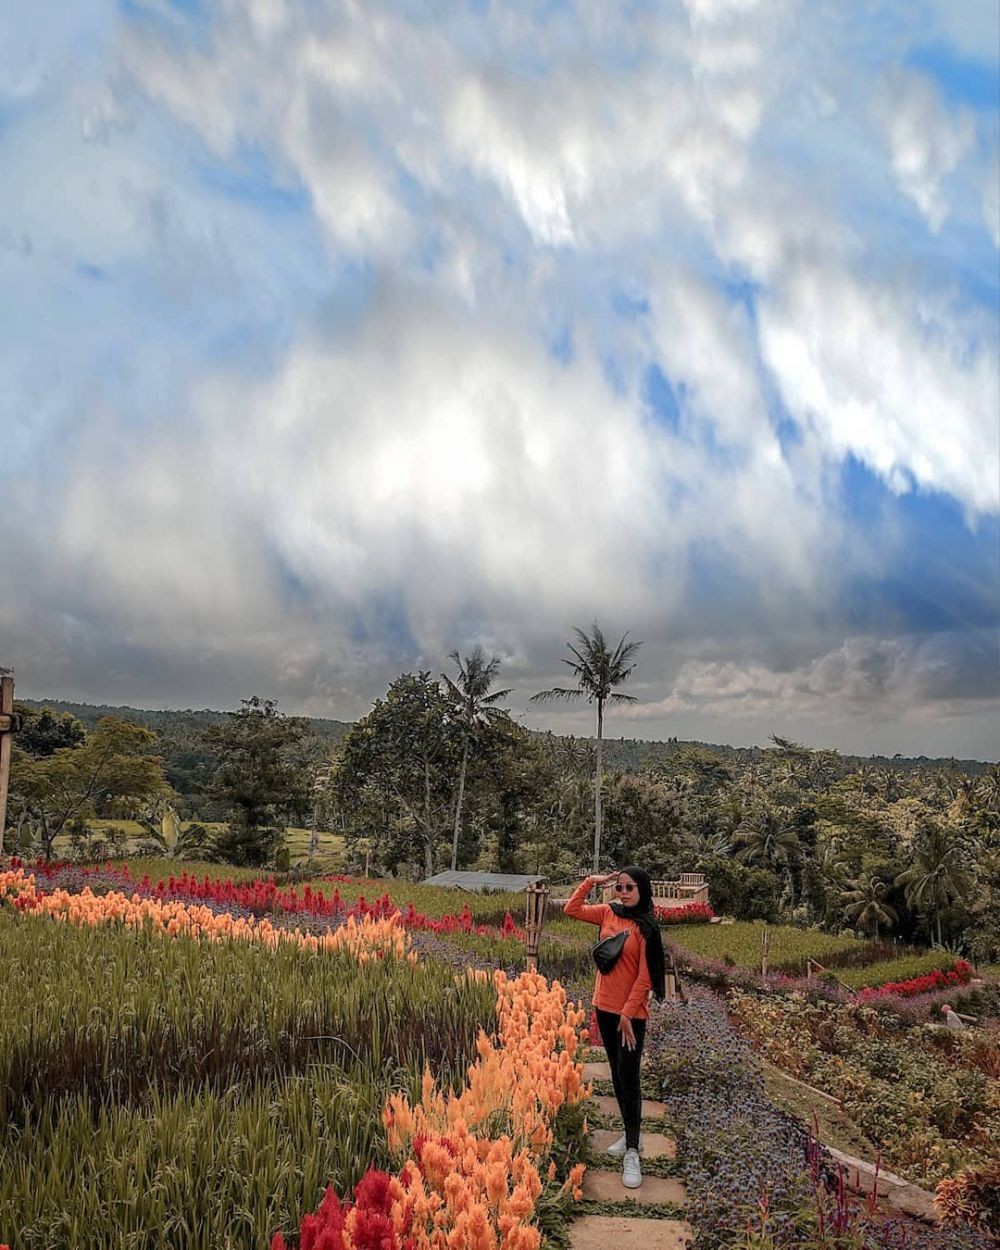  Agrowisata Terbaik di Jawa Timur, Inilah Keajaiban Taman Suruh Banyuwangi yang Tak Terlupakan